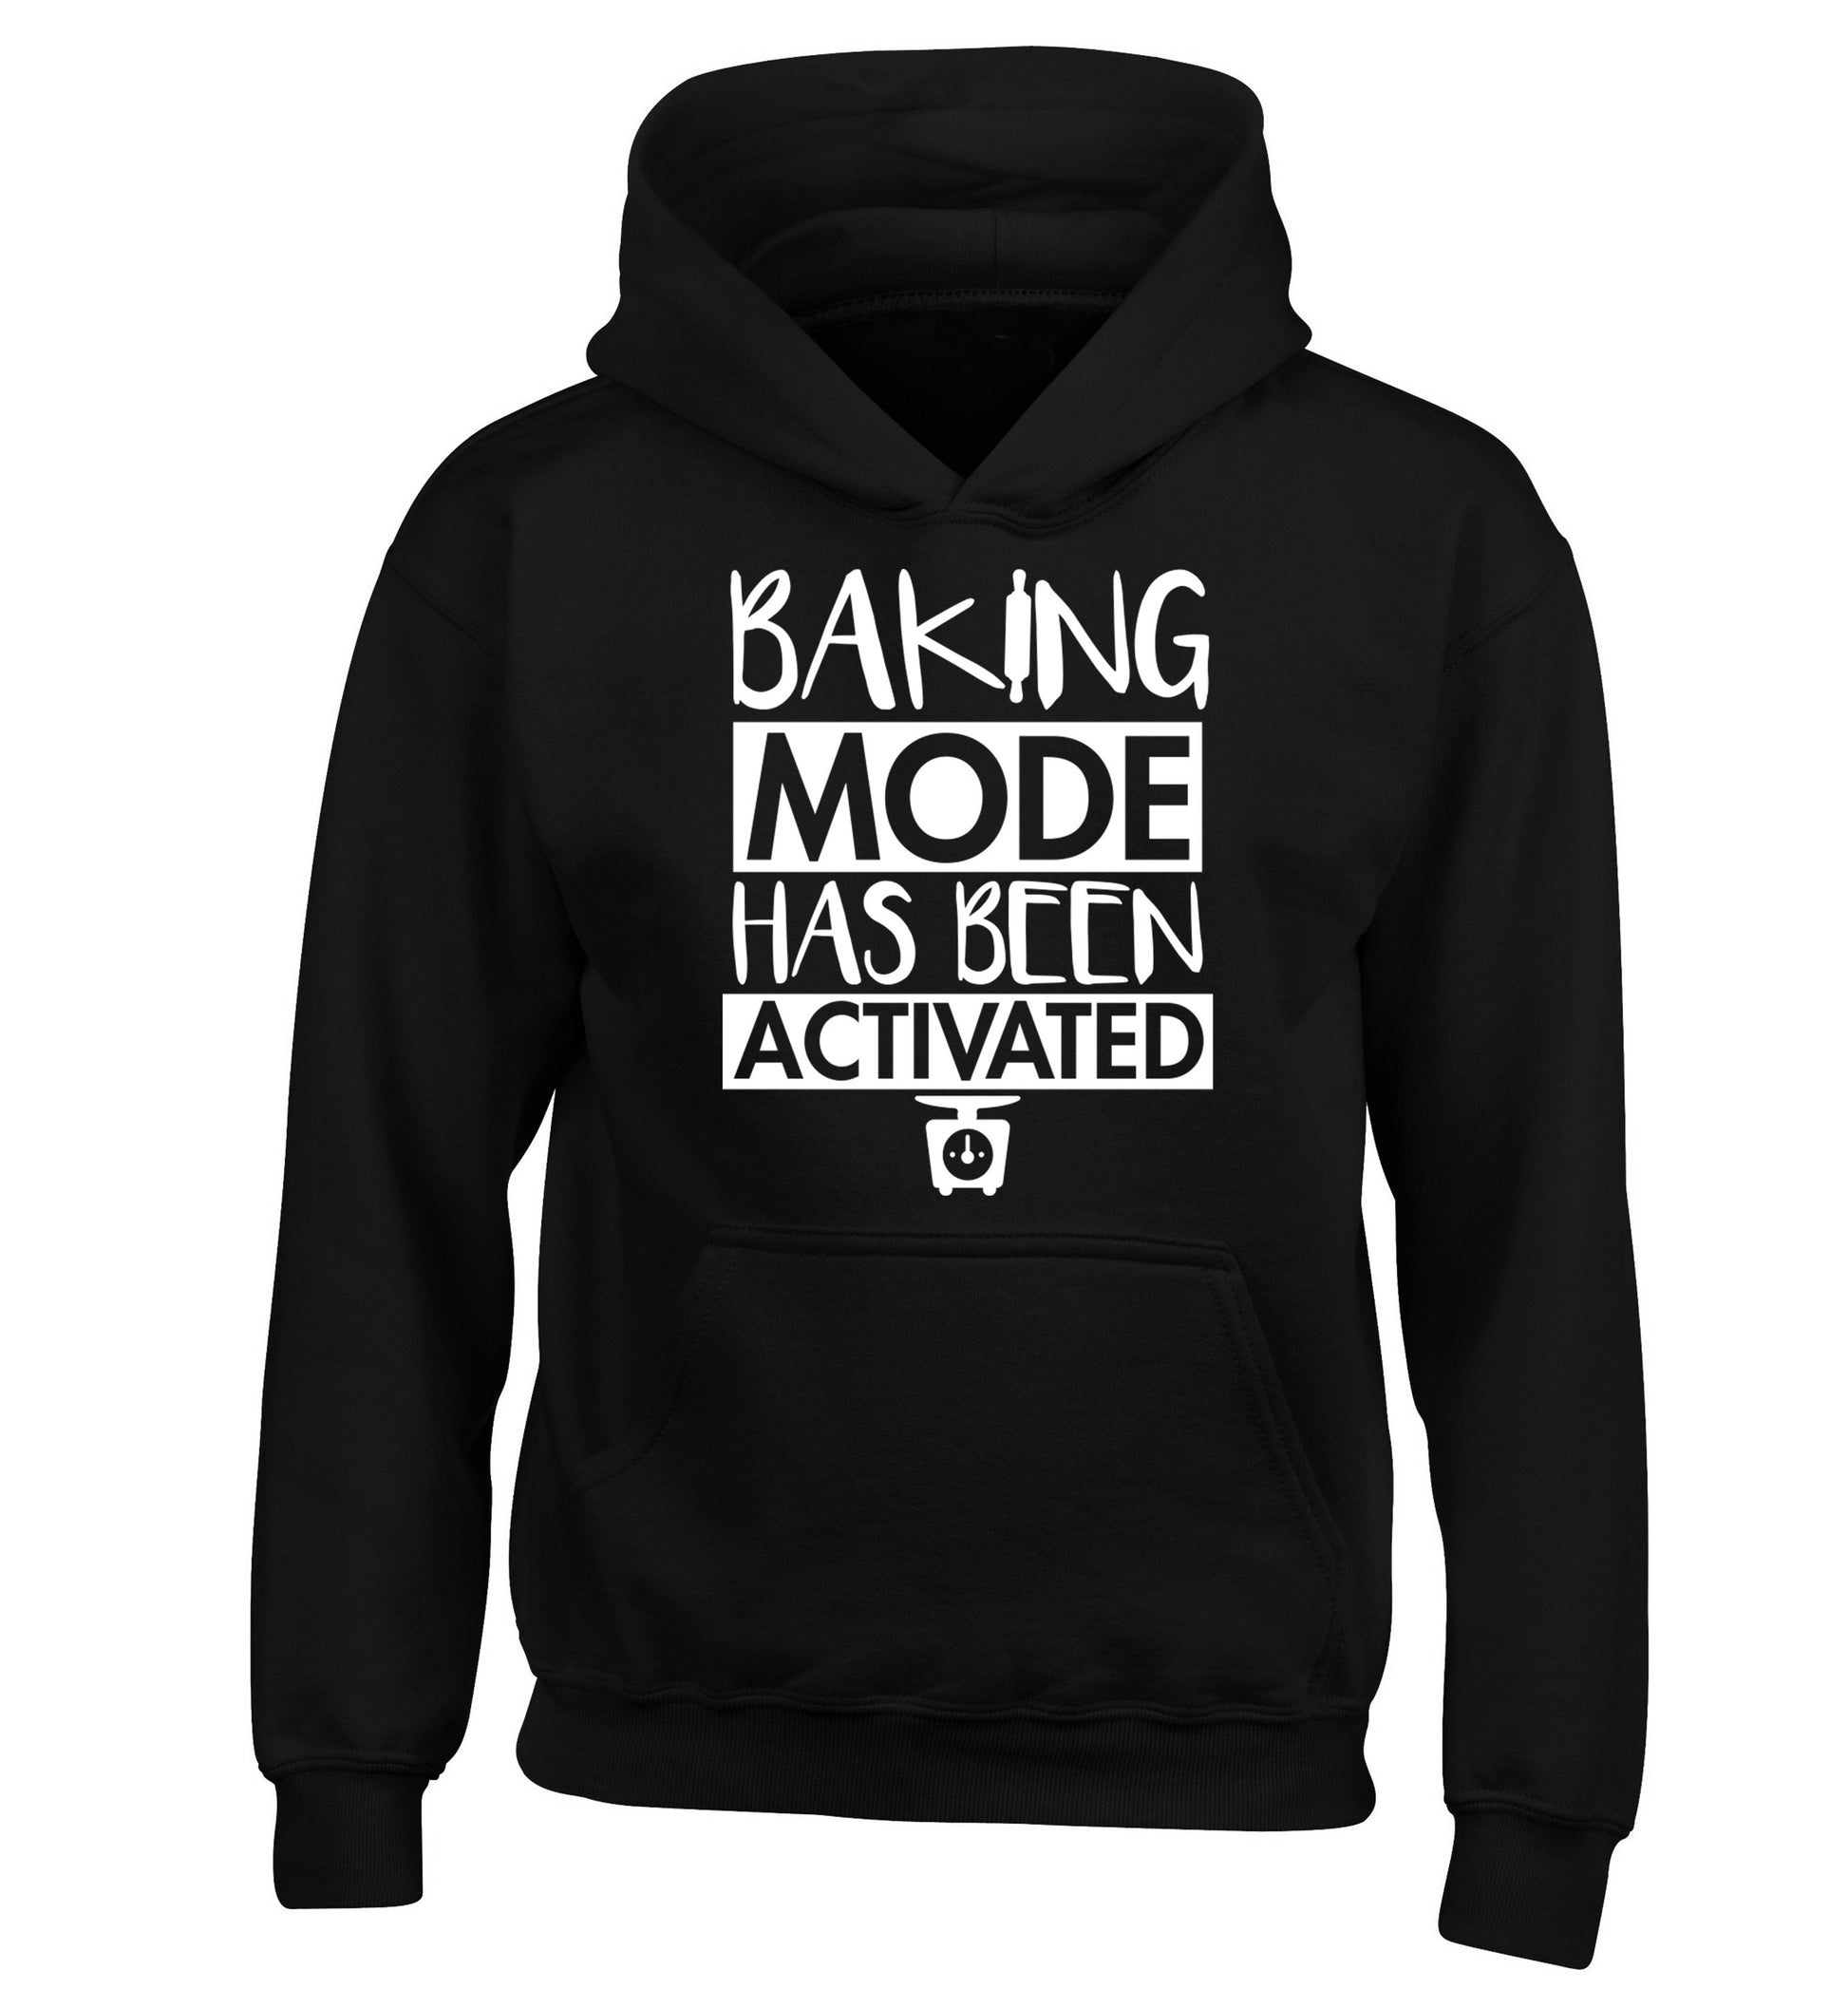 Baking mode has been activated children's black hoodie 12-14 Years